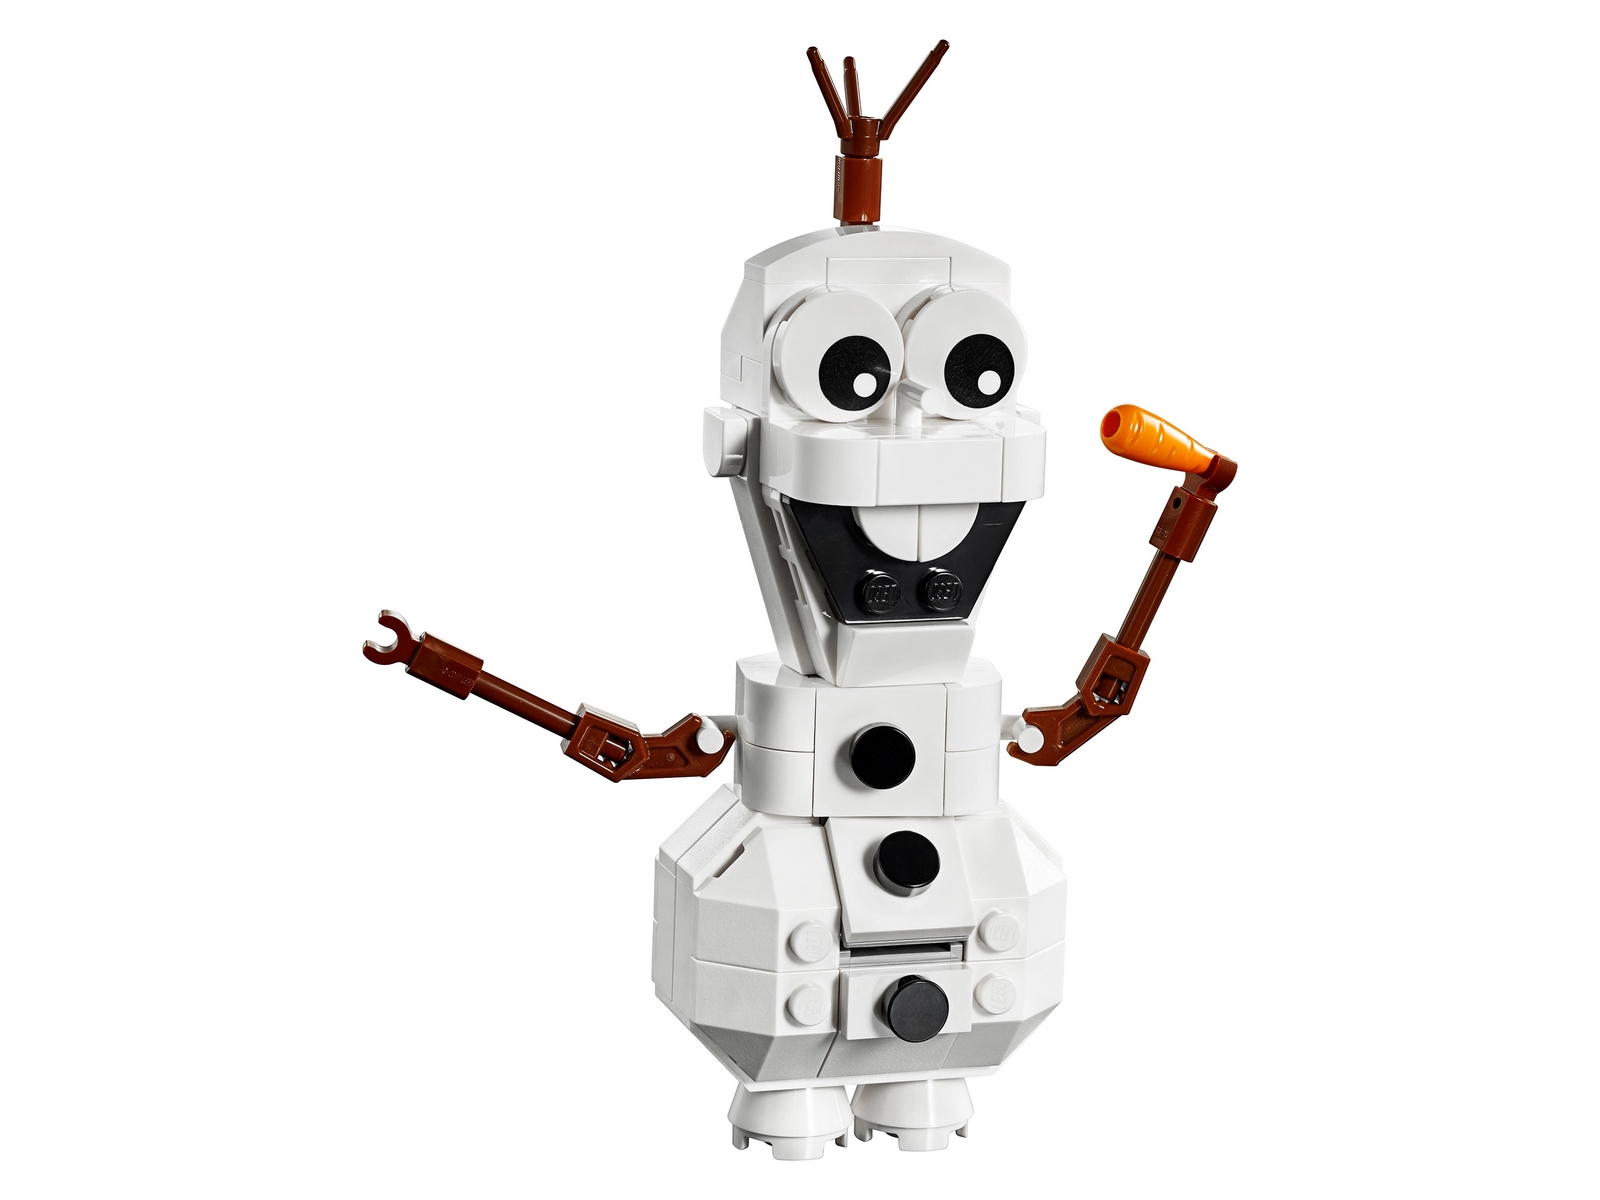 Конструктор LEGO Disney Frozen-2 «Олаф» 41169 / 122 детали